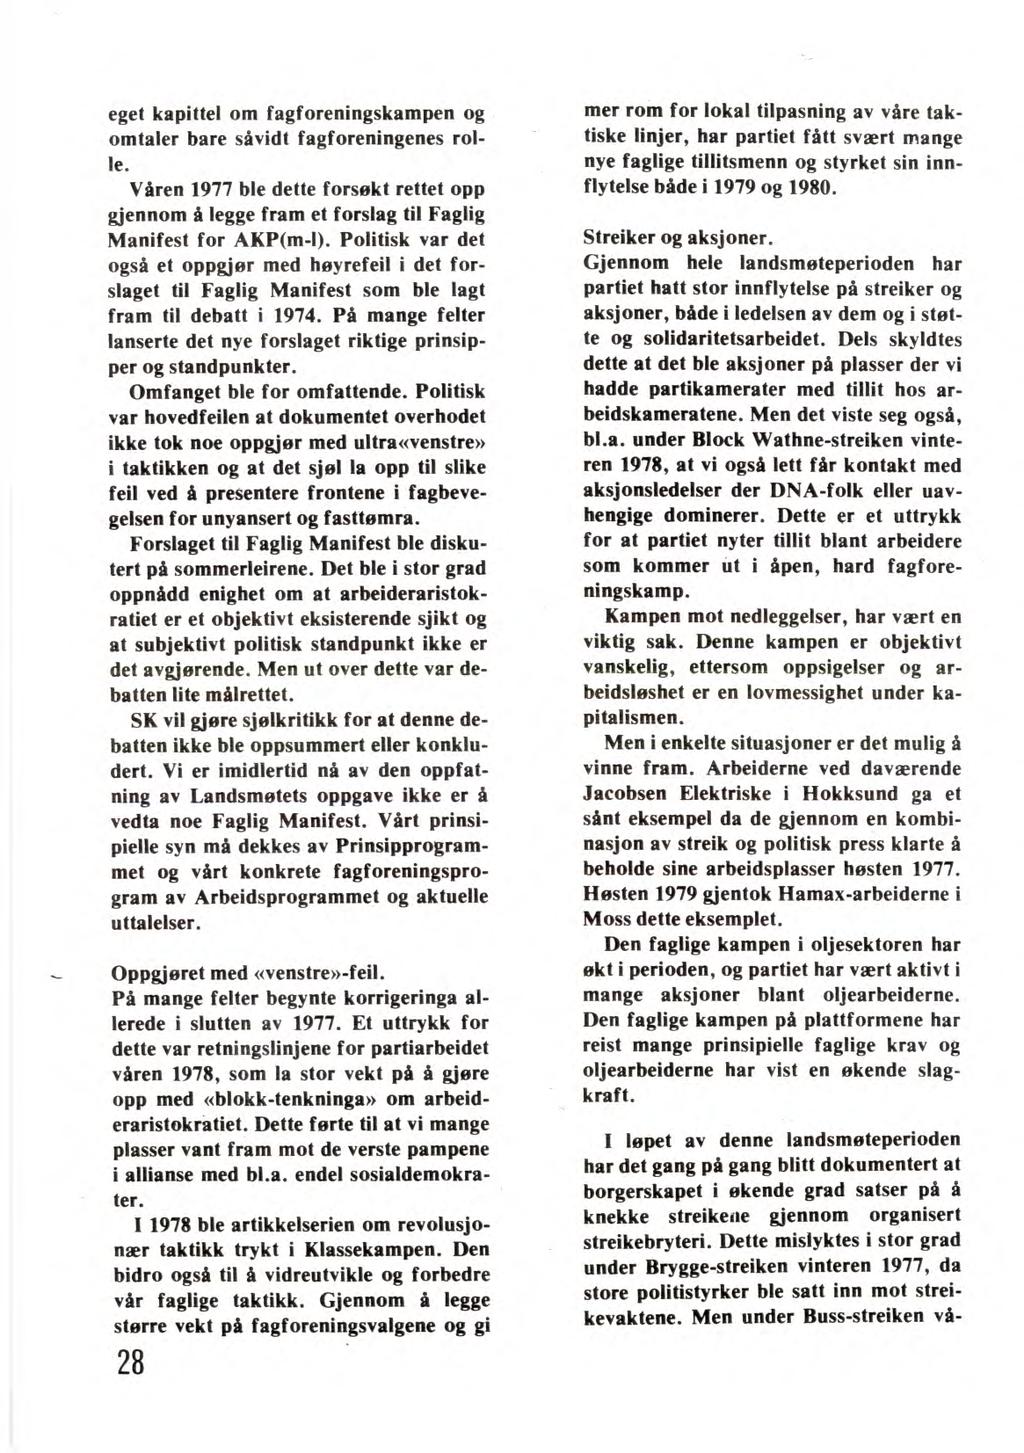 eget kapittel om fagforeningskampen og omtaler bare såvidt fagforeningenes rolle. Våren 1977 ble dette forsøkt rettet opp gjennom å legge fram et forslag til Faglig Manifest for AKP(m-I).